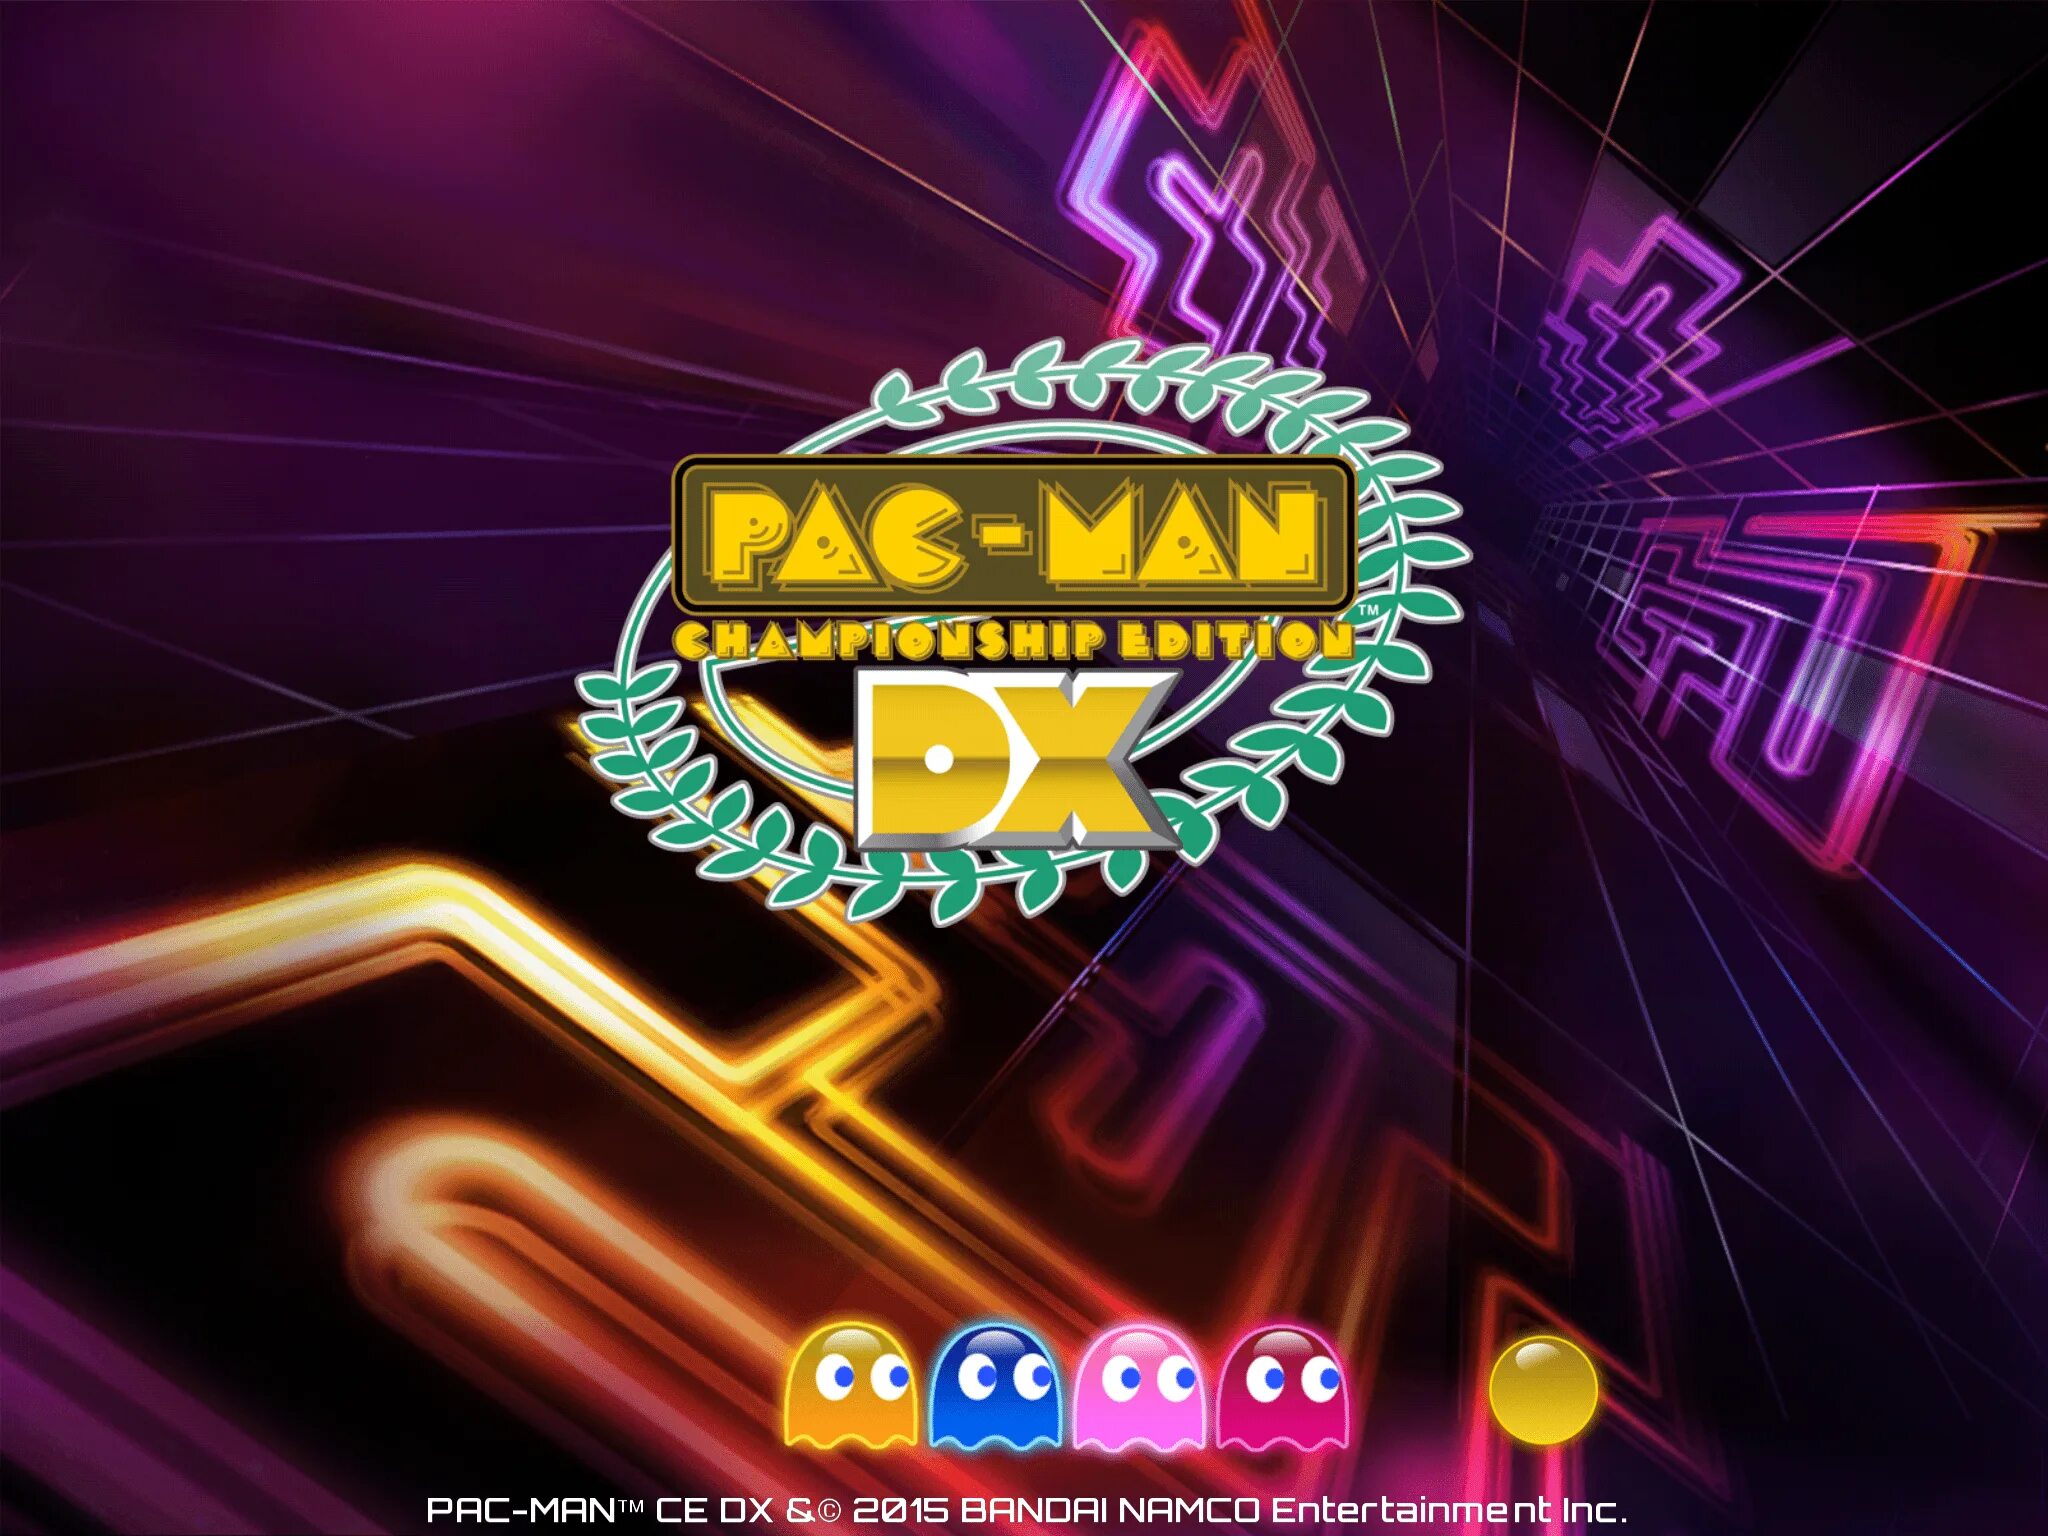 Pac man championship. Pac-man Championship Edition 2. Pac-man Championship Edition. Pacman Championship Edition. Pac man Championship Edition DX+.